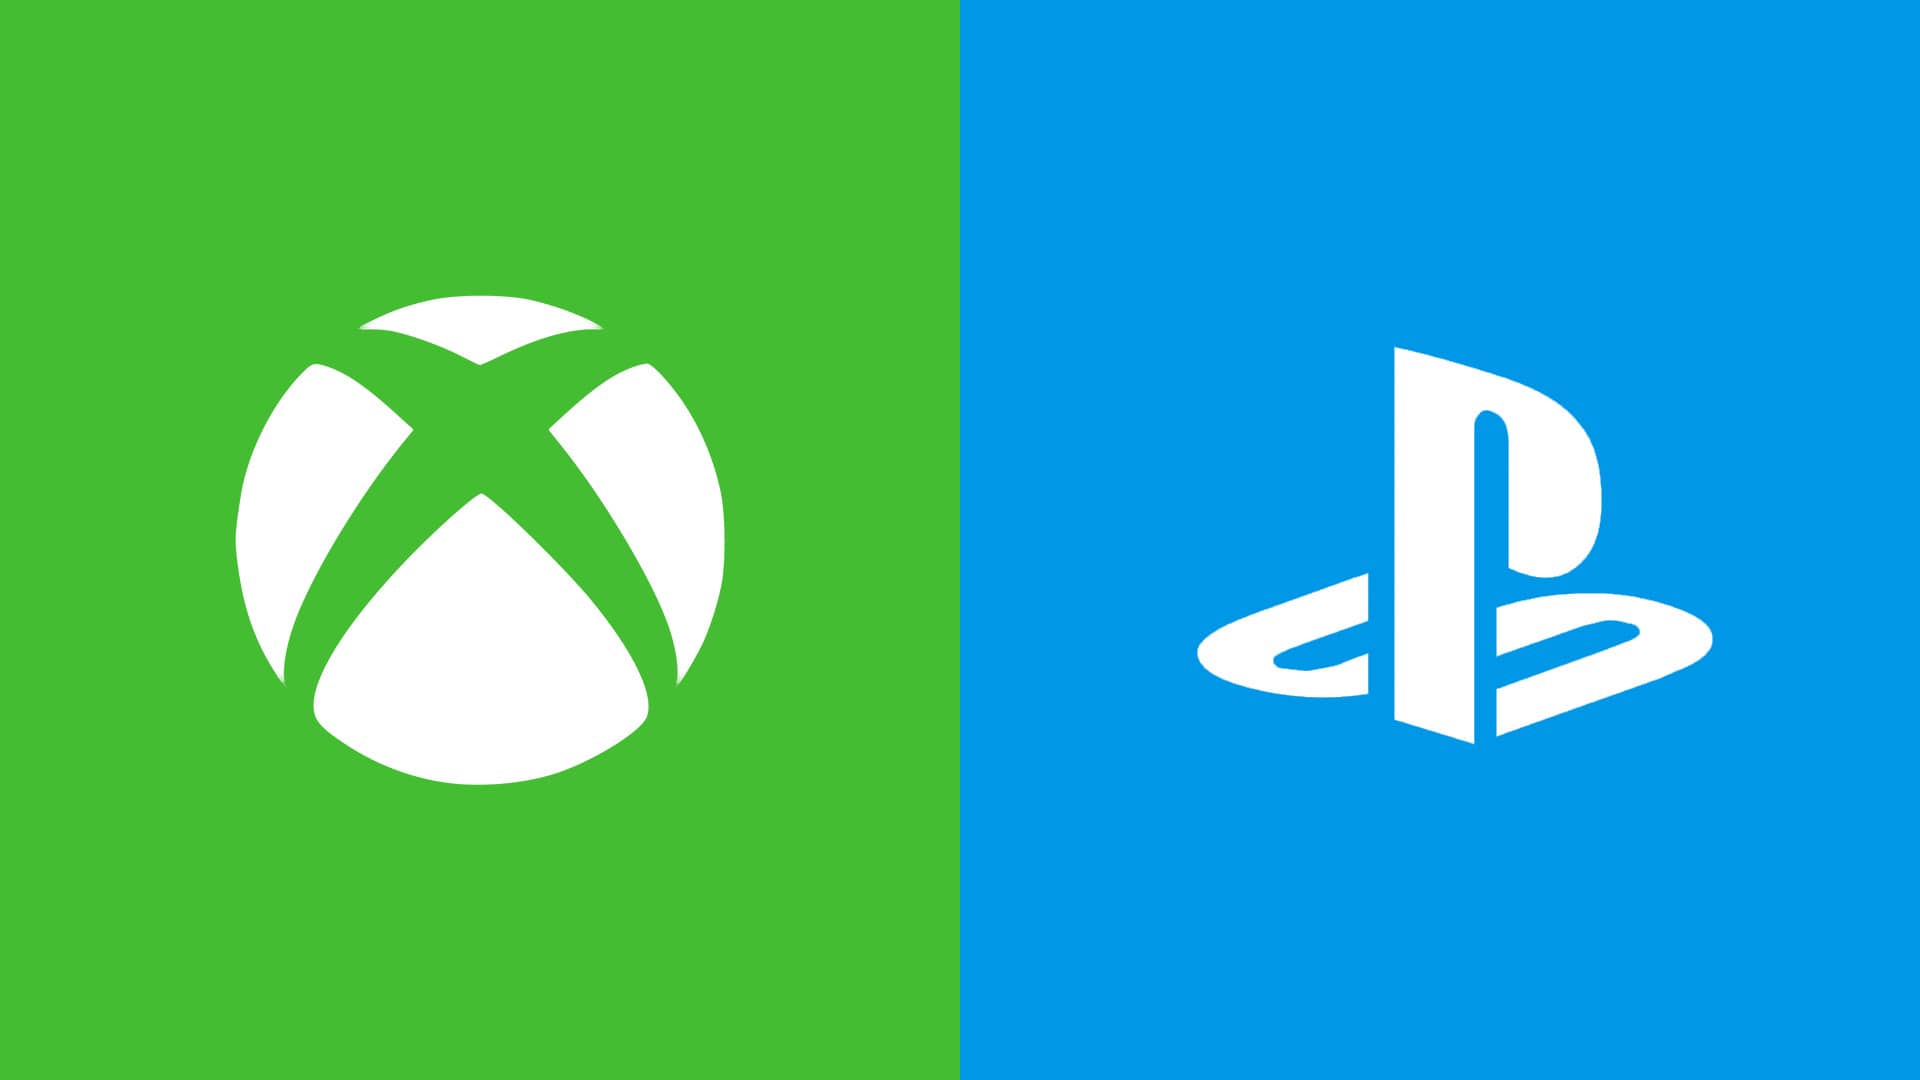 Haruskah Epic menjalankan PlayStation vs Xbox 'perang konsol' Fortnite pertandingan?